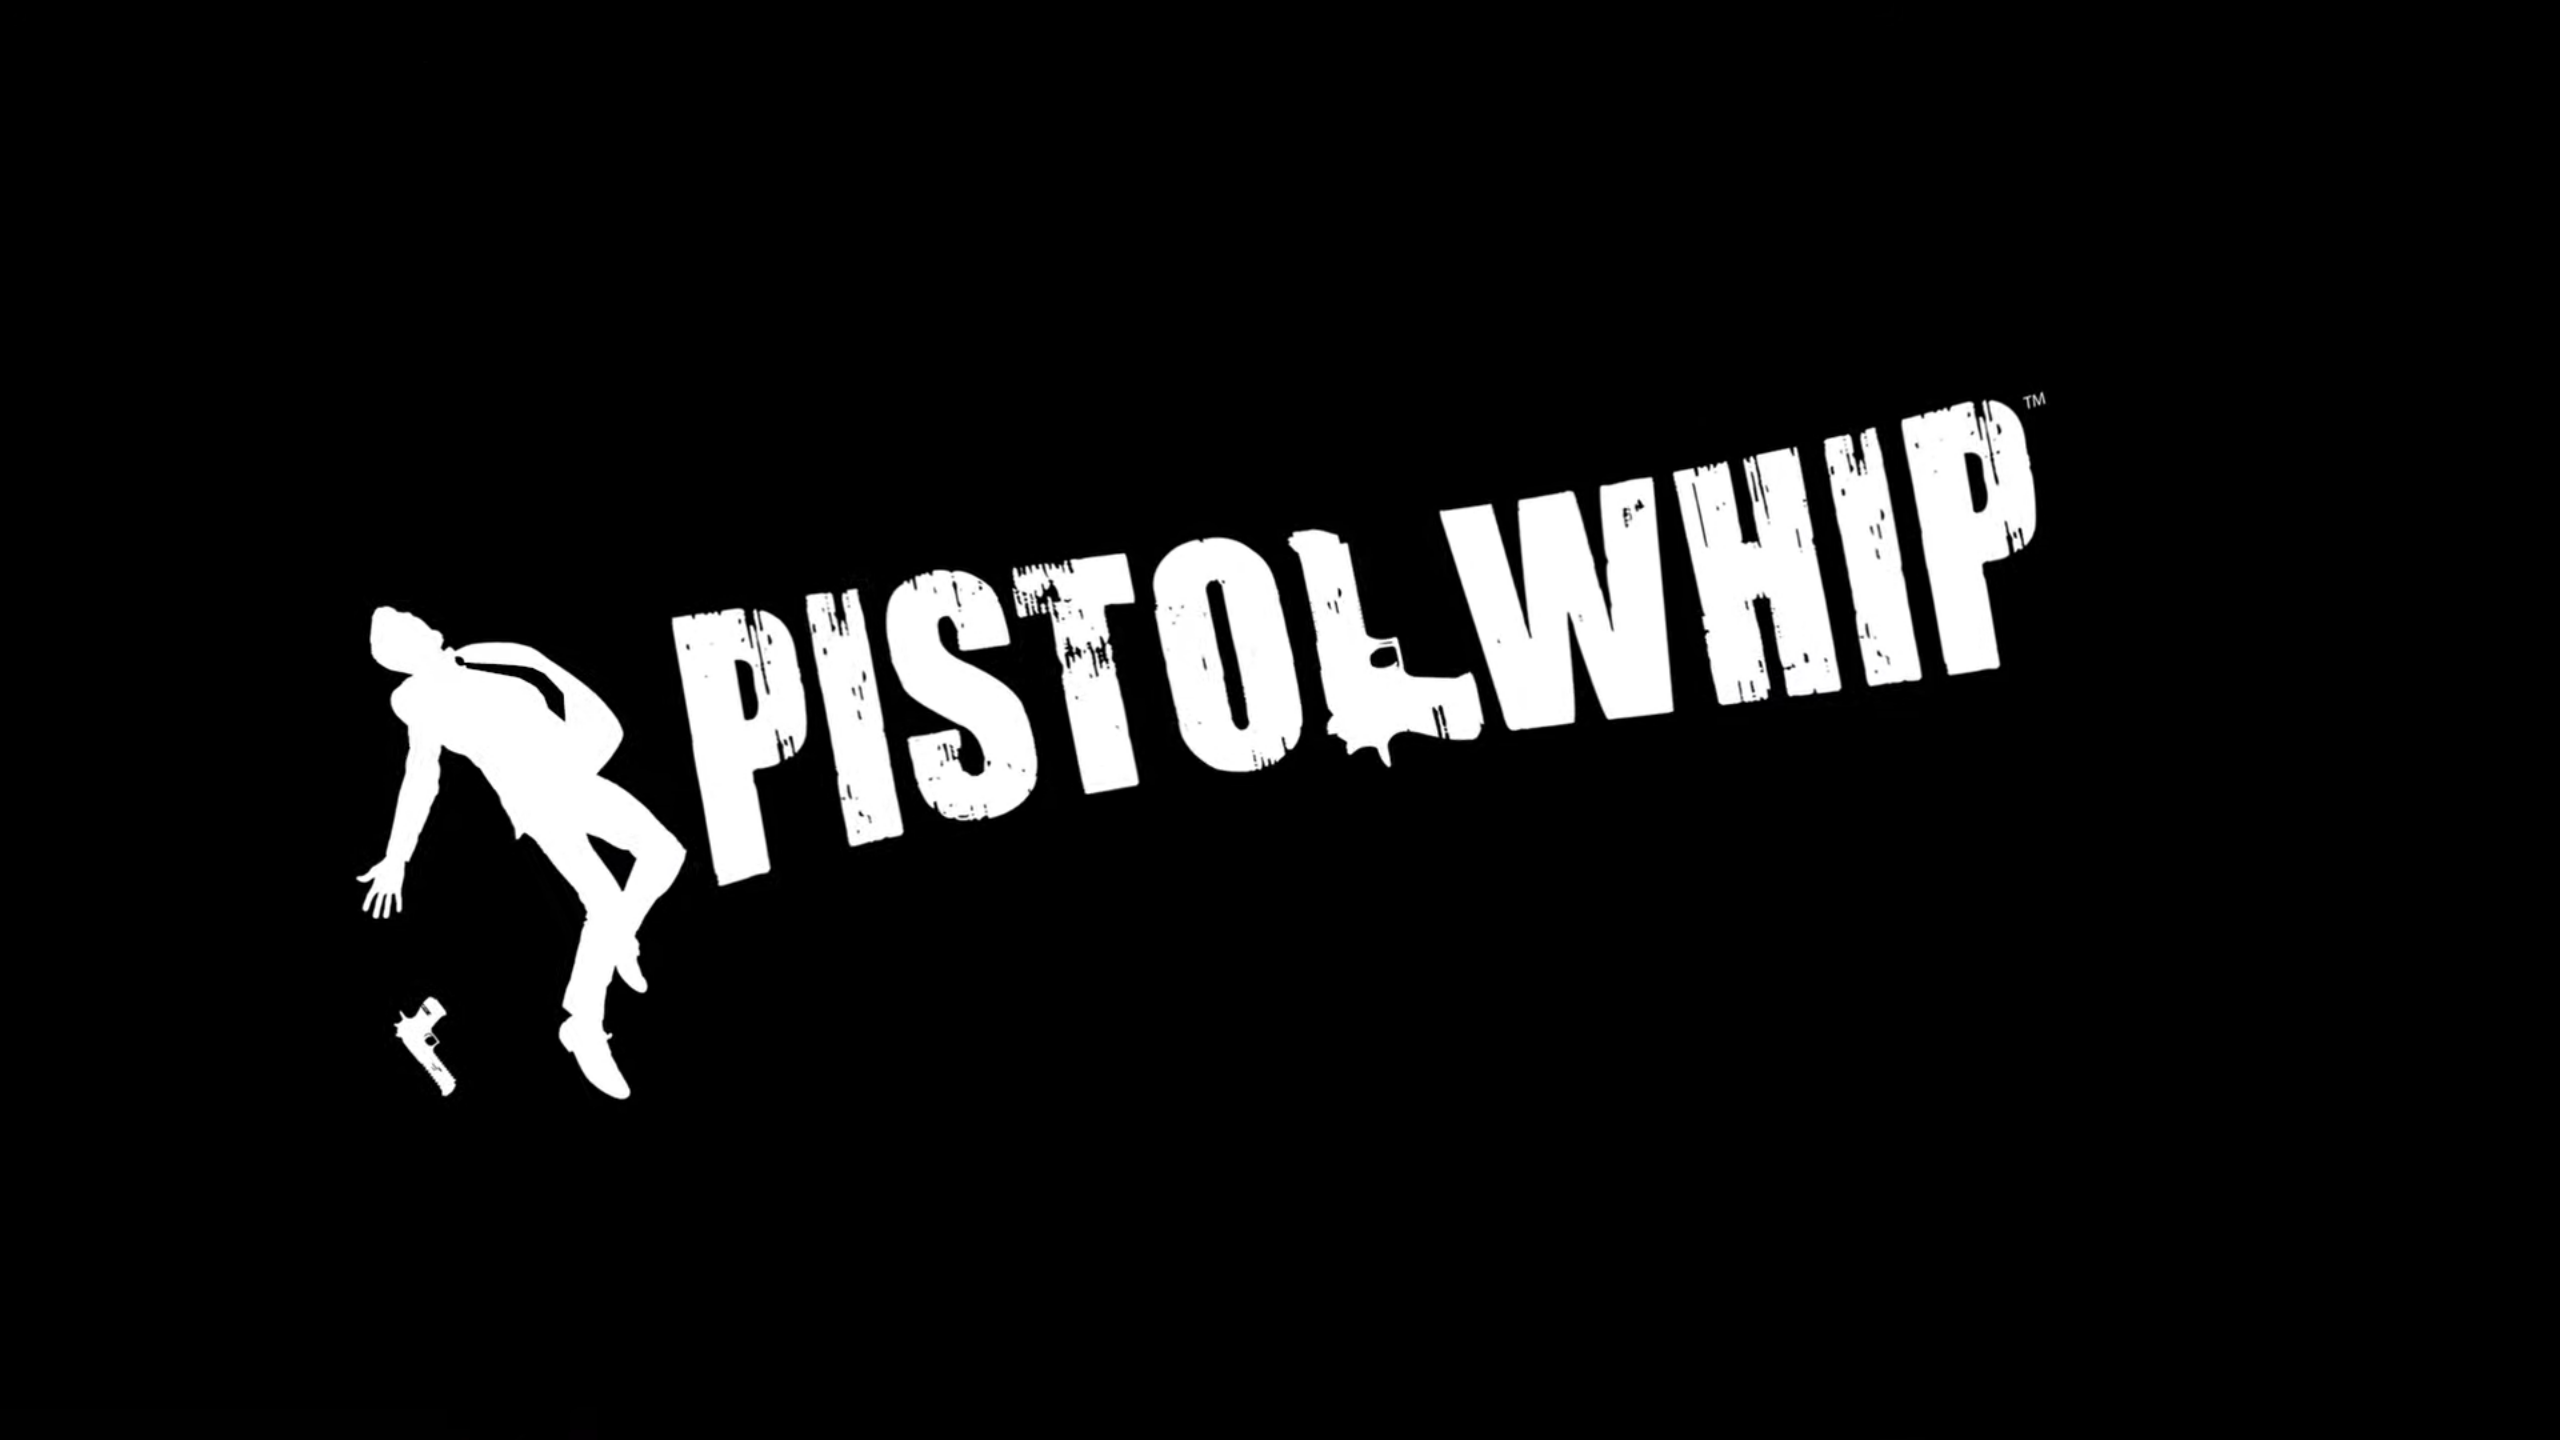 ps4 pistol whip